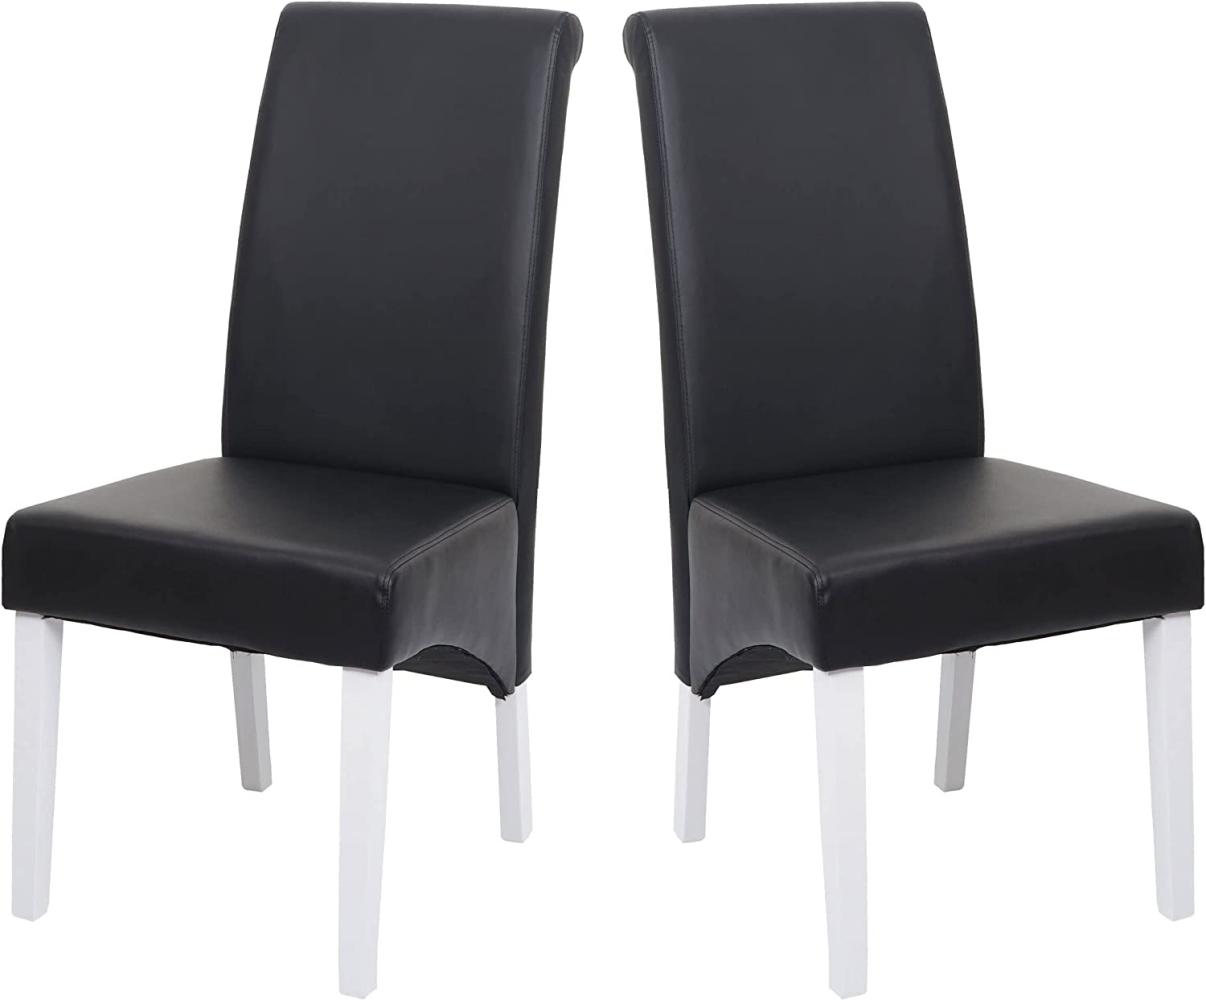 2x Esszimmerstuhl Lehnstuhl Stuhl M37 ~ Leder, schwarz, weiße Füße Bild 1